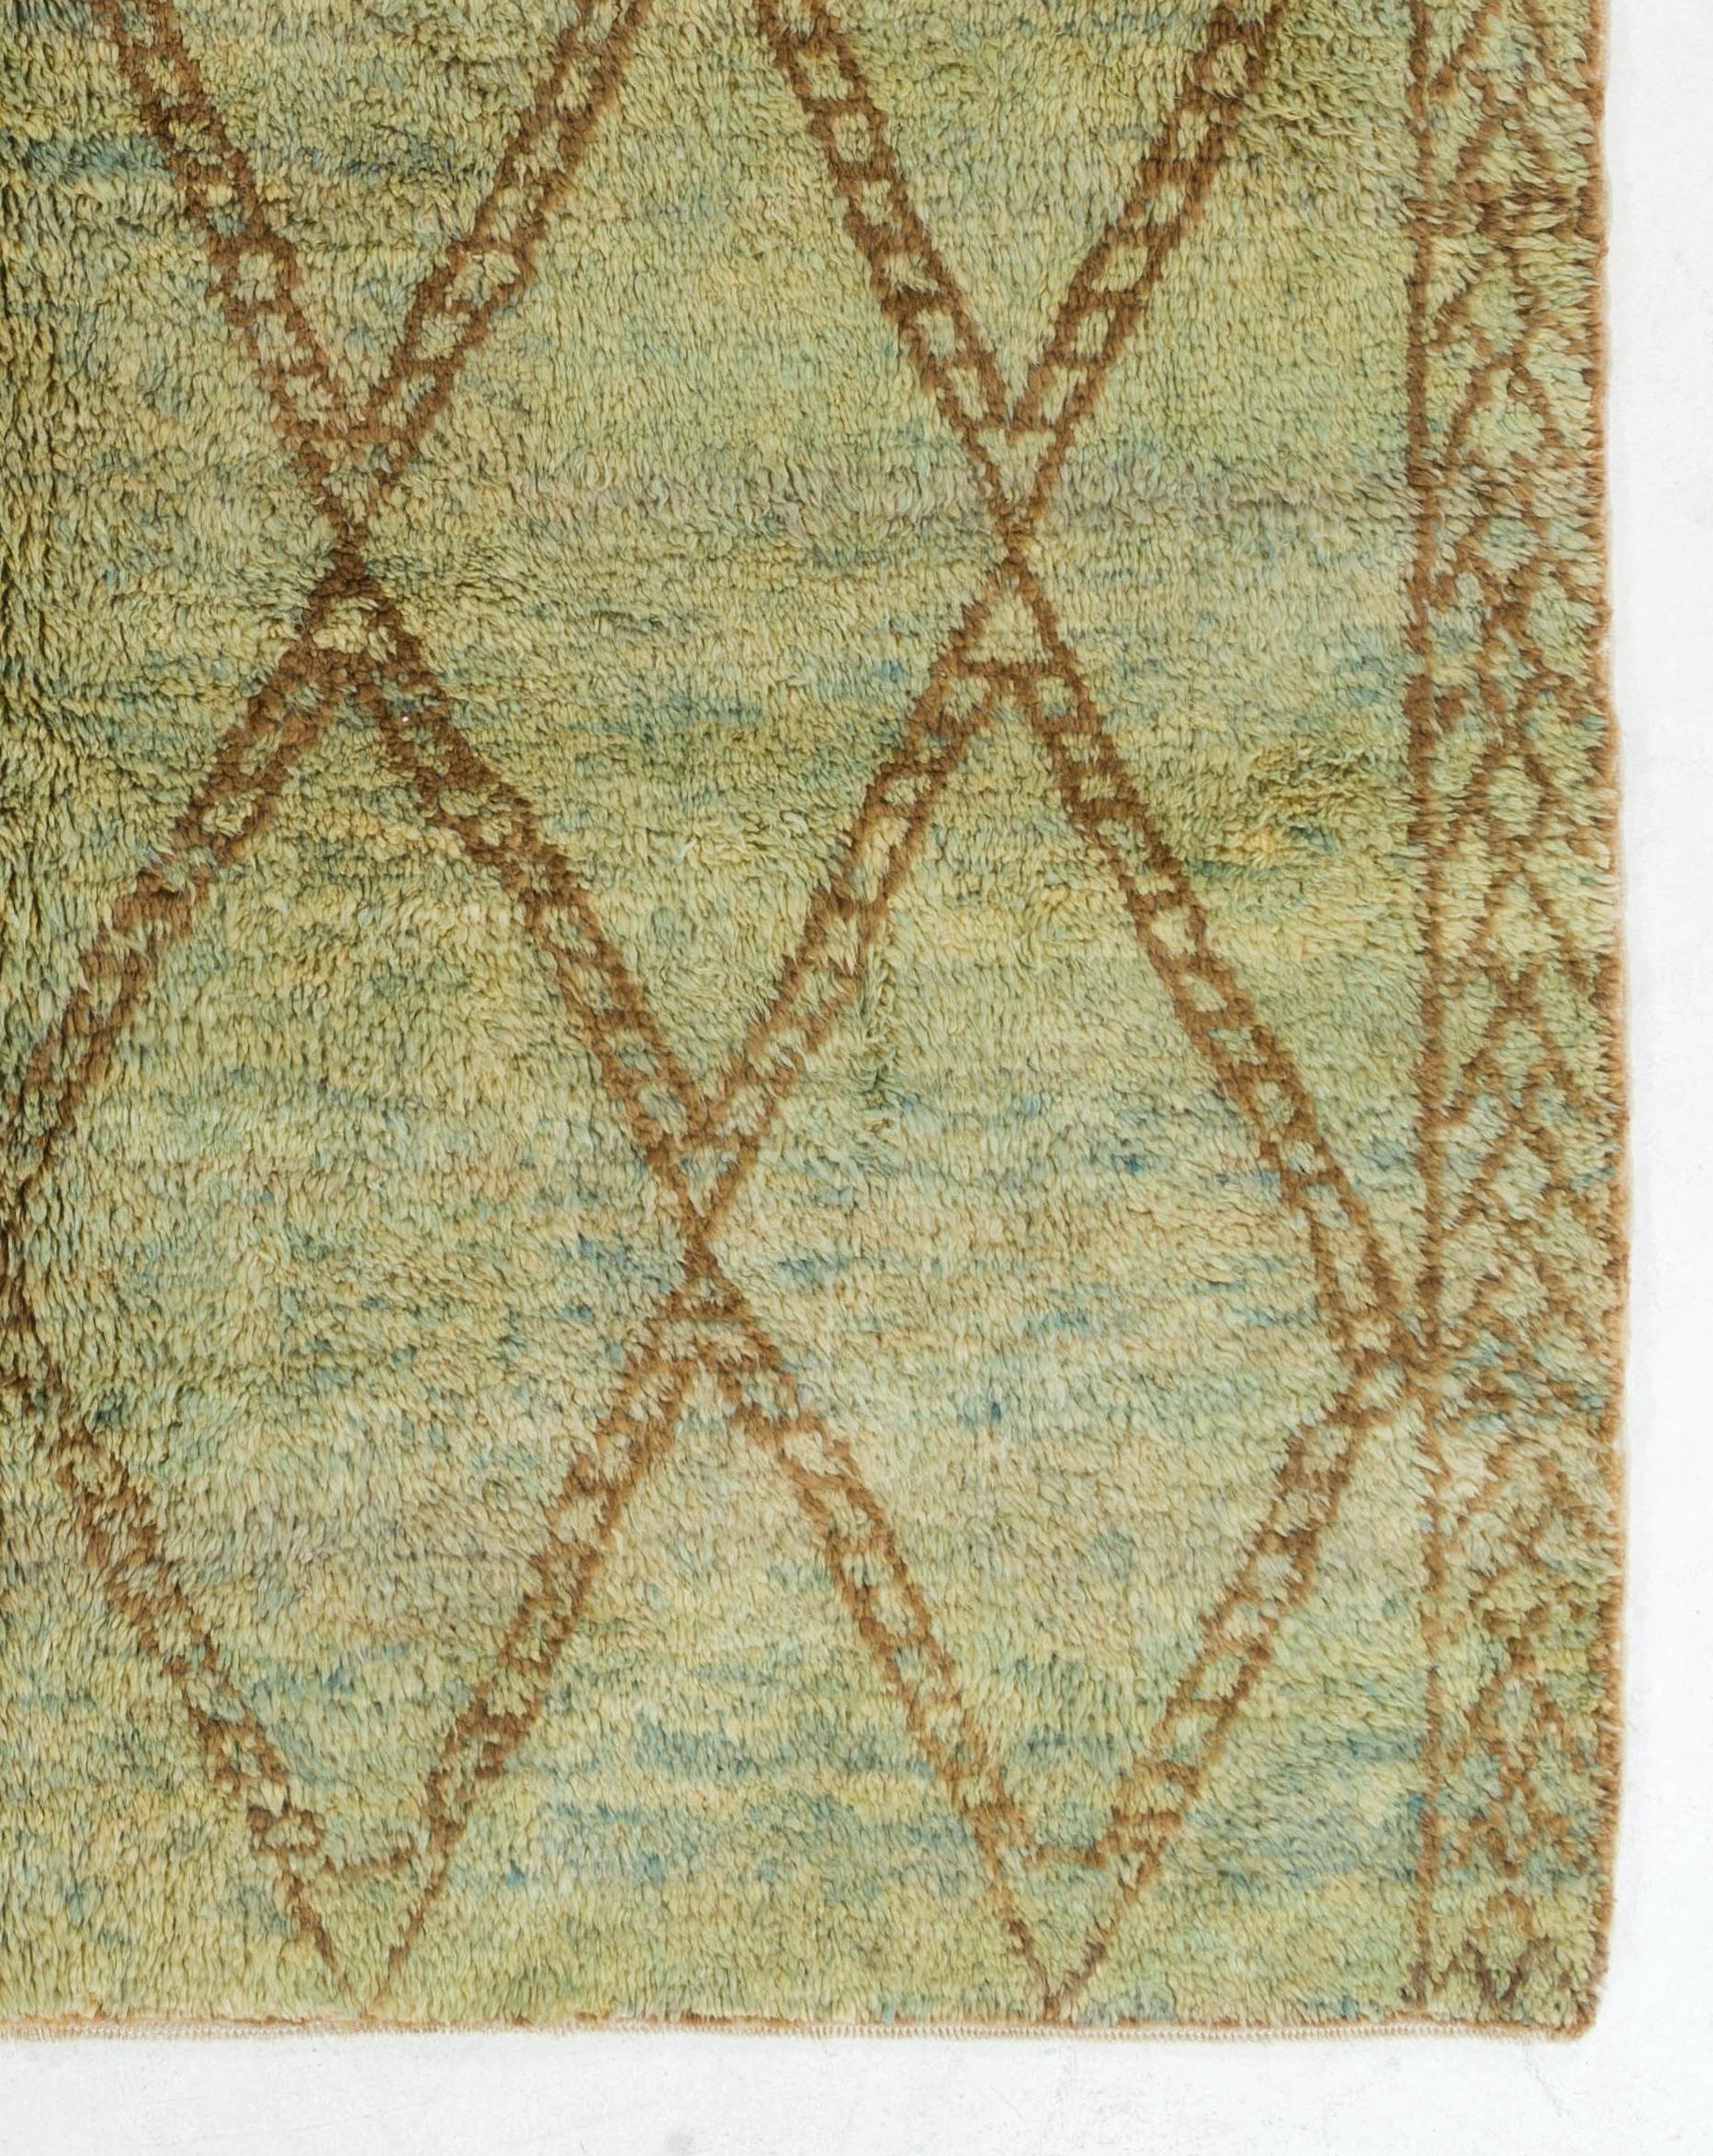 Turkish Modern Handmade Wool Moroccan Berber Rug in Sage Green, Blue, Brown. Custom Ops. For Sale